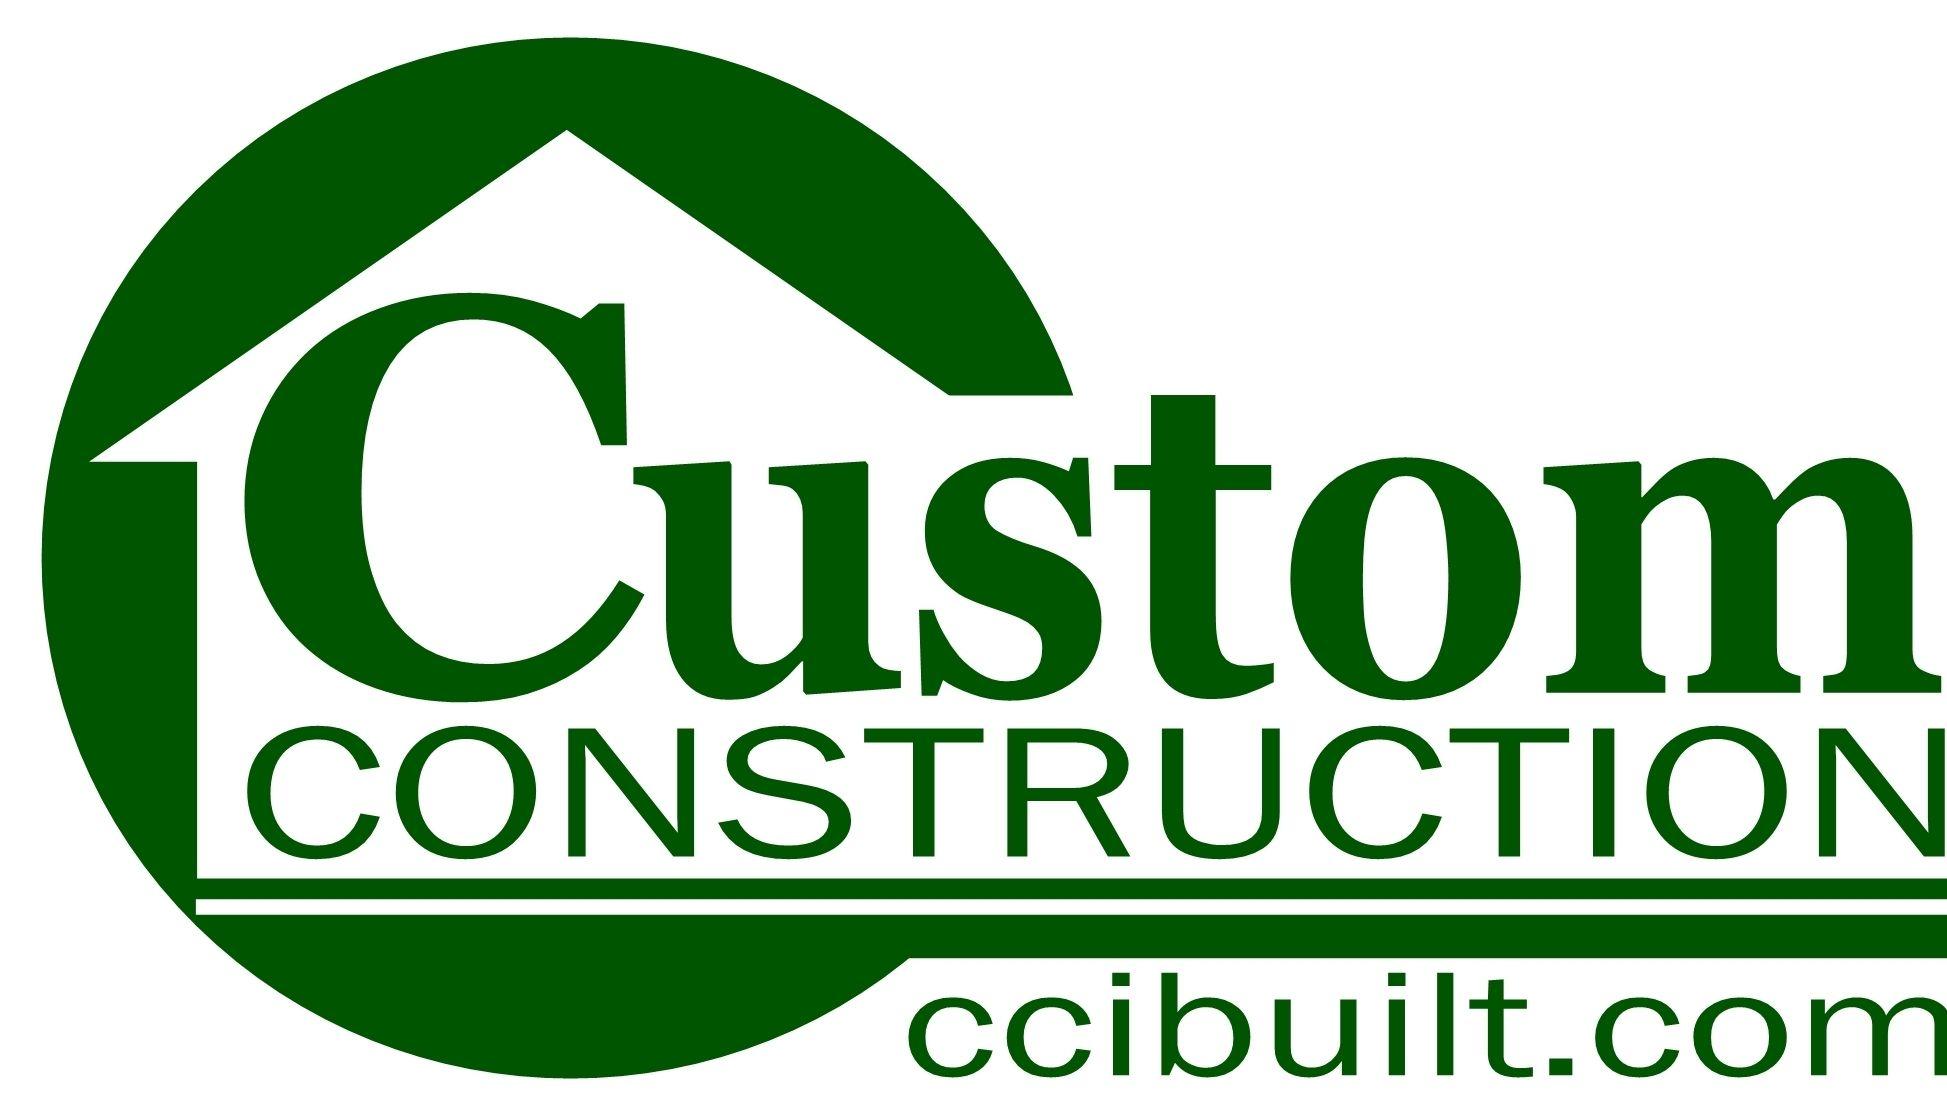 House Construction Logo - House Construction: House Construction Logos, clayton homes logo ...